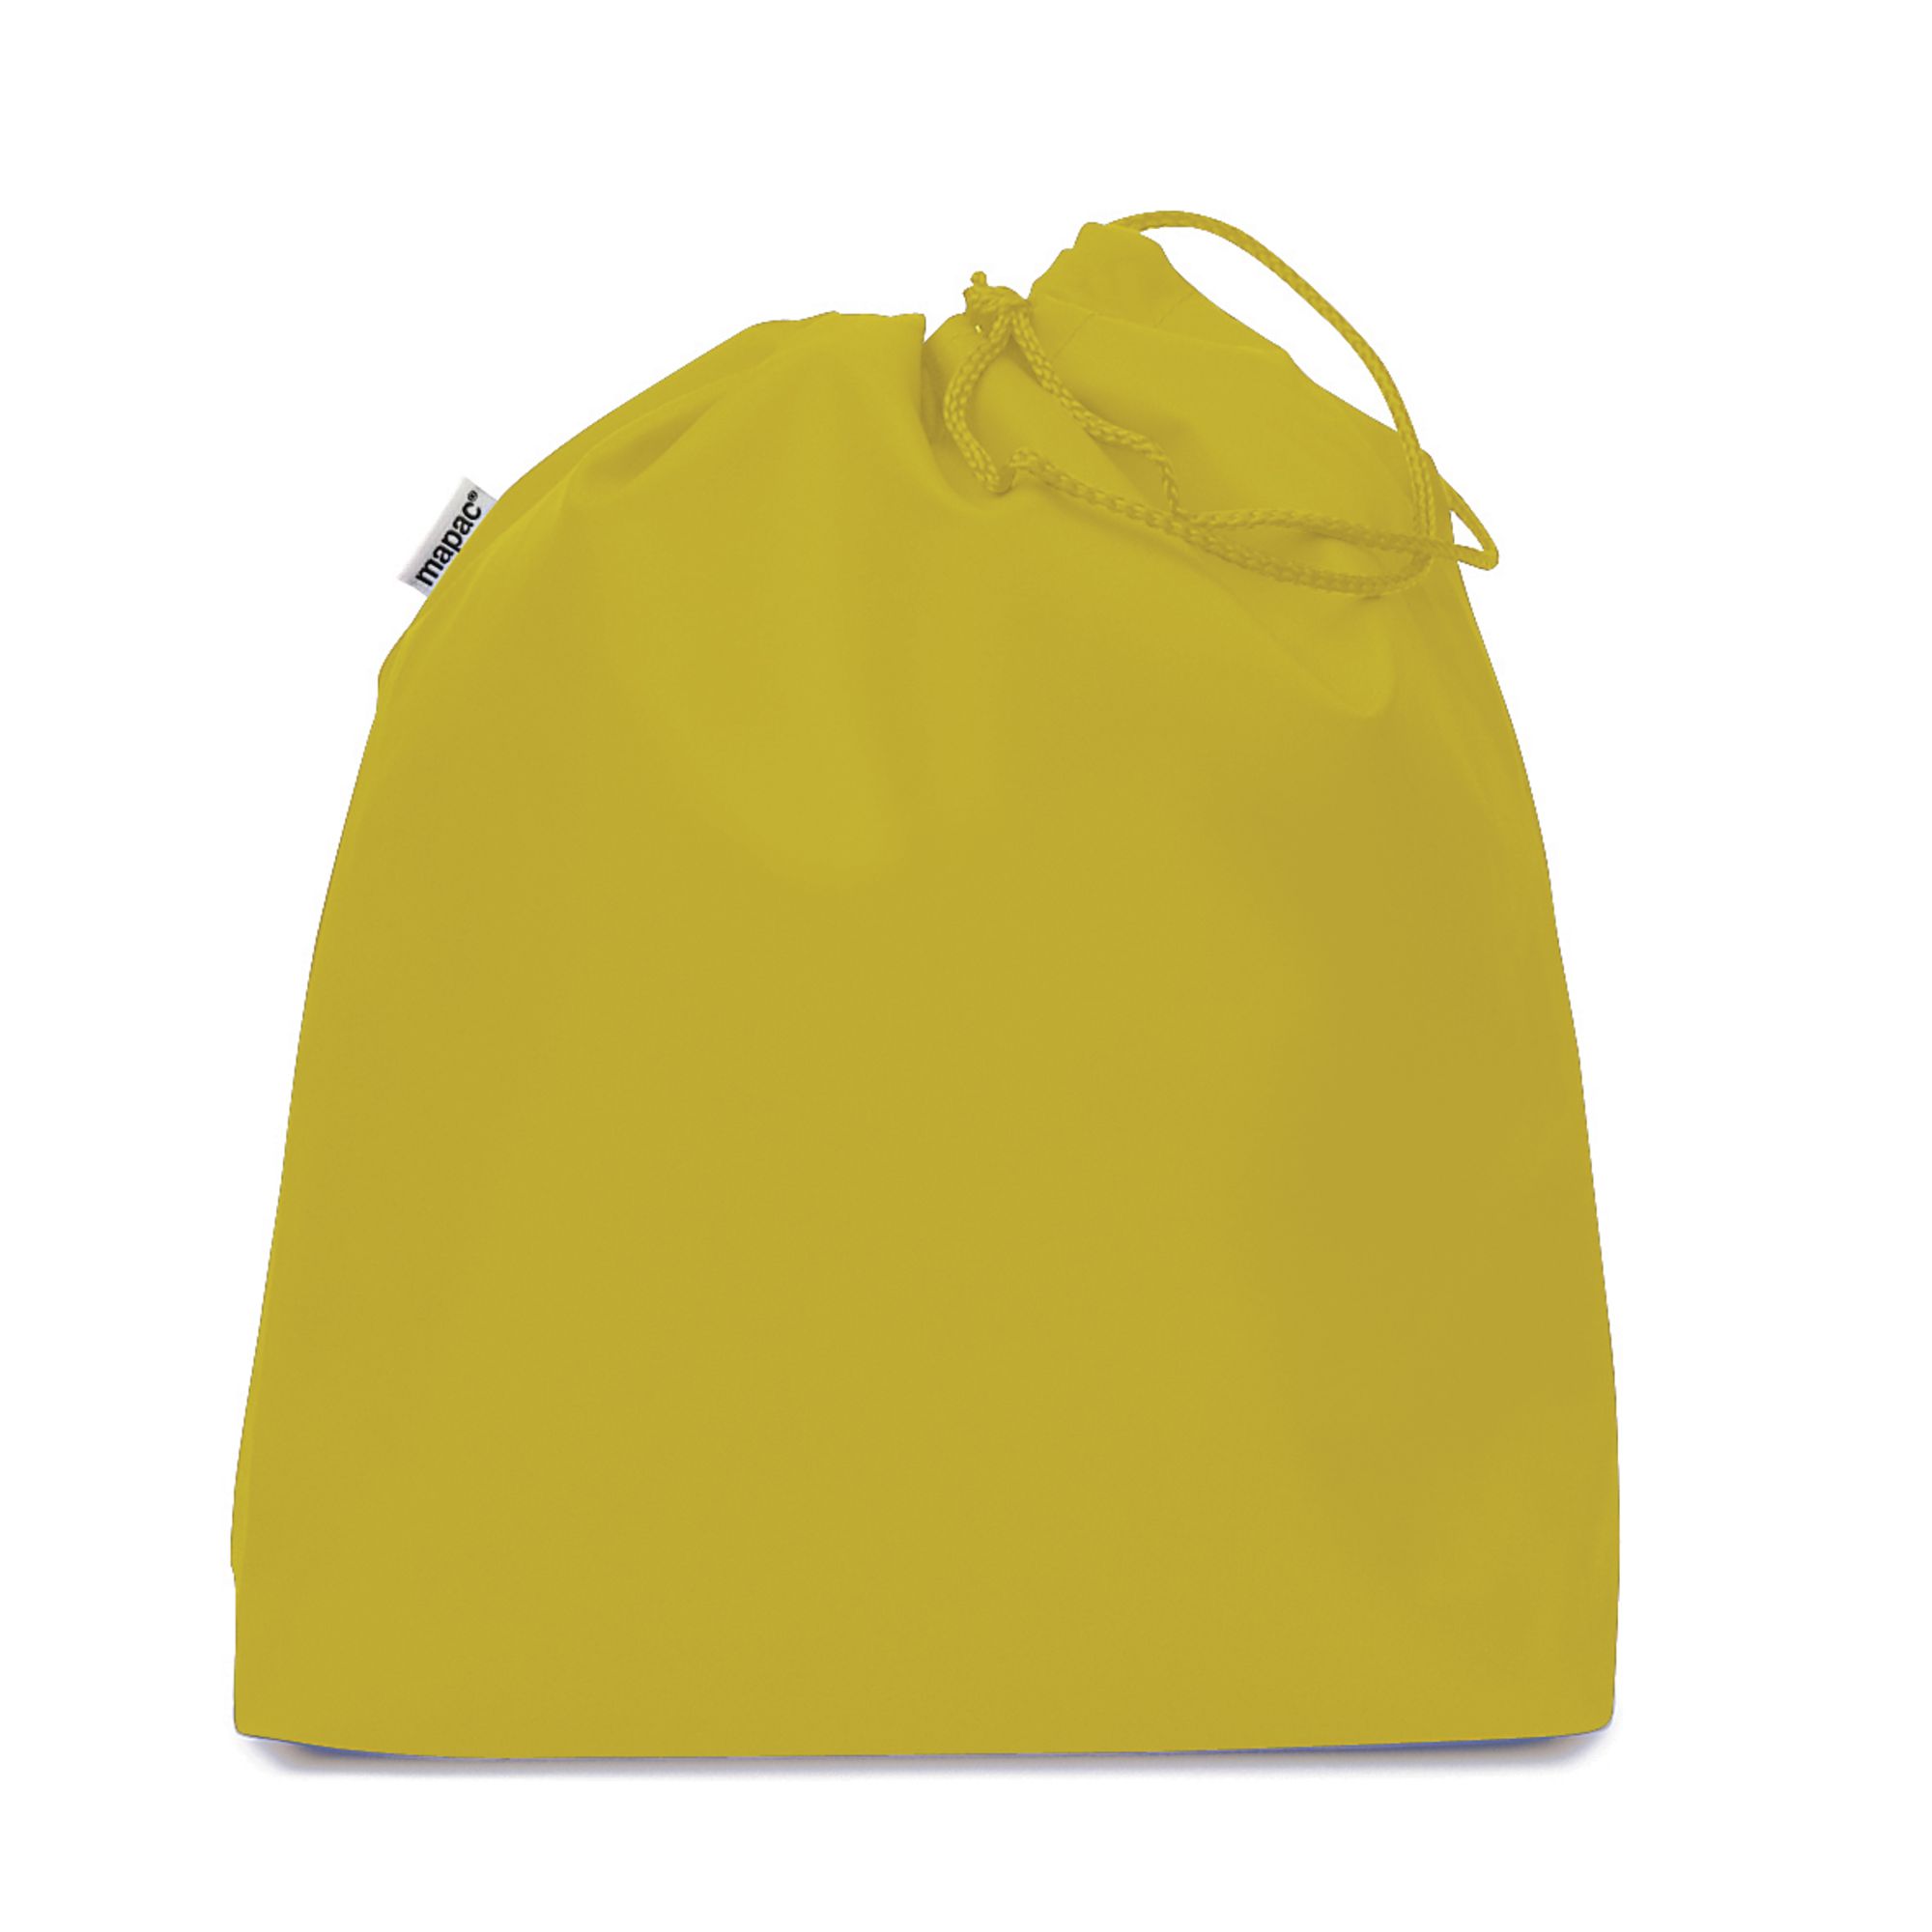 yellow gym bag